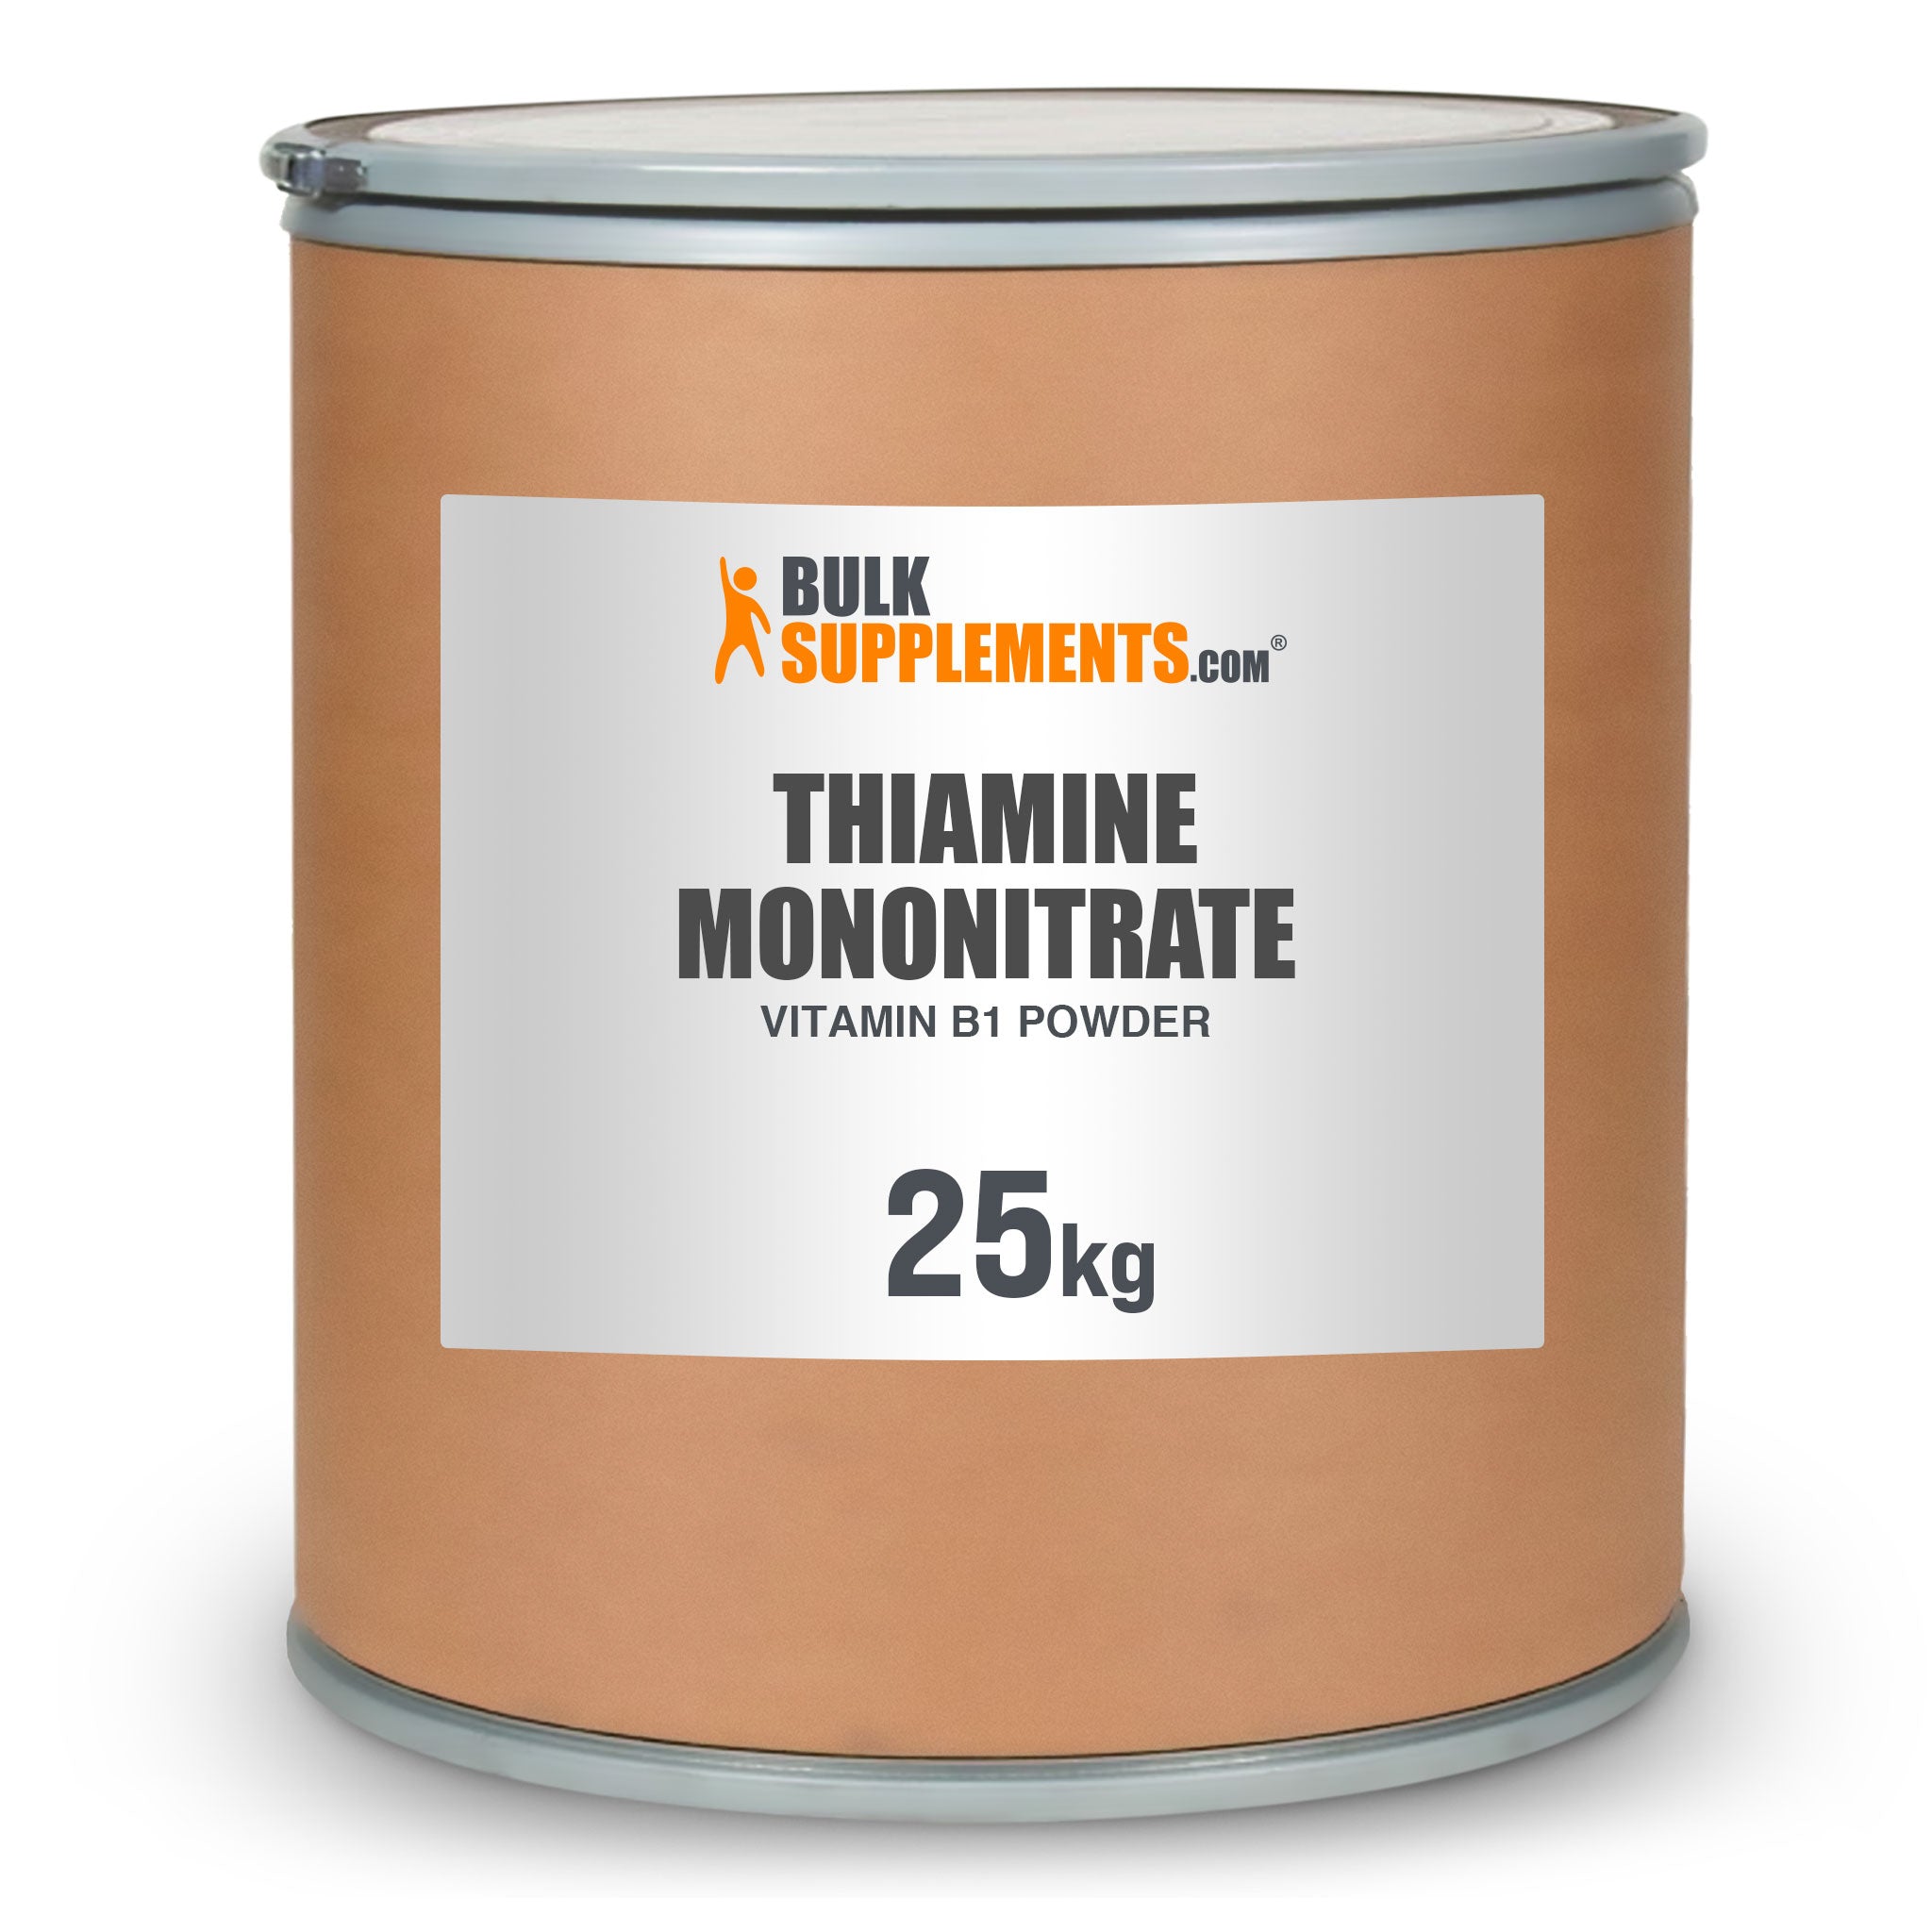 BulkSupplements Thiamine Mononitrate Vitamin B1 Powder 25kg drum